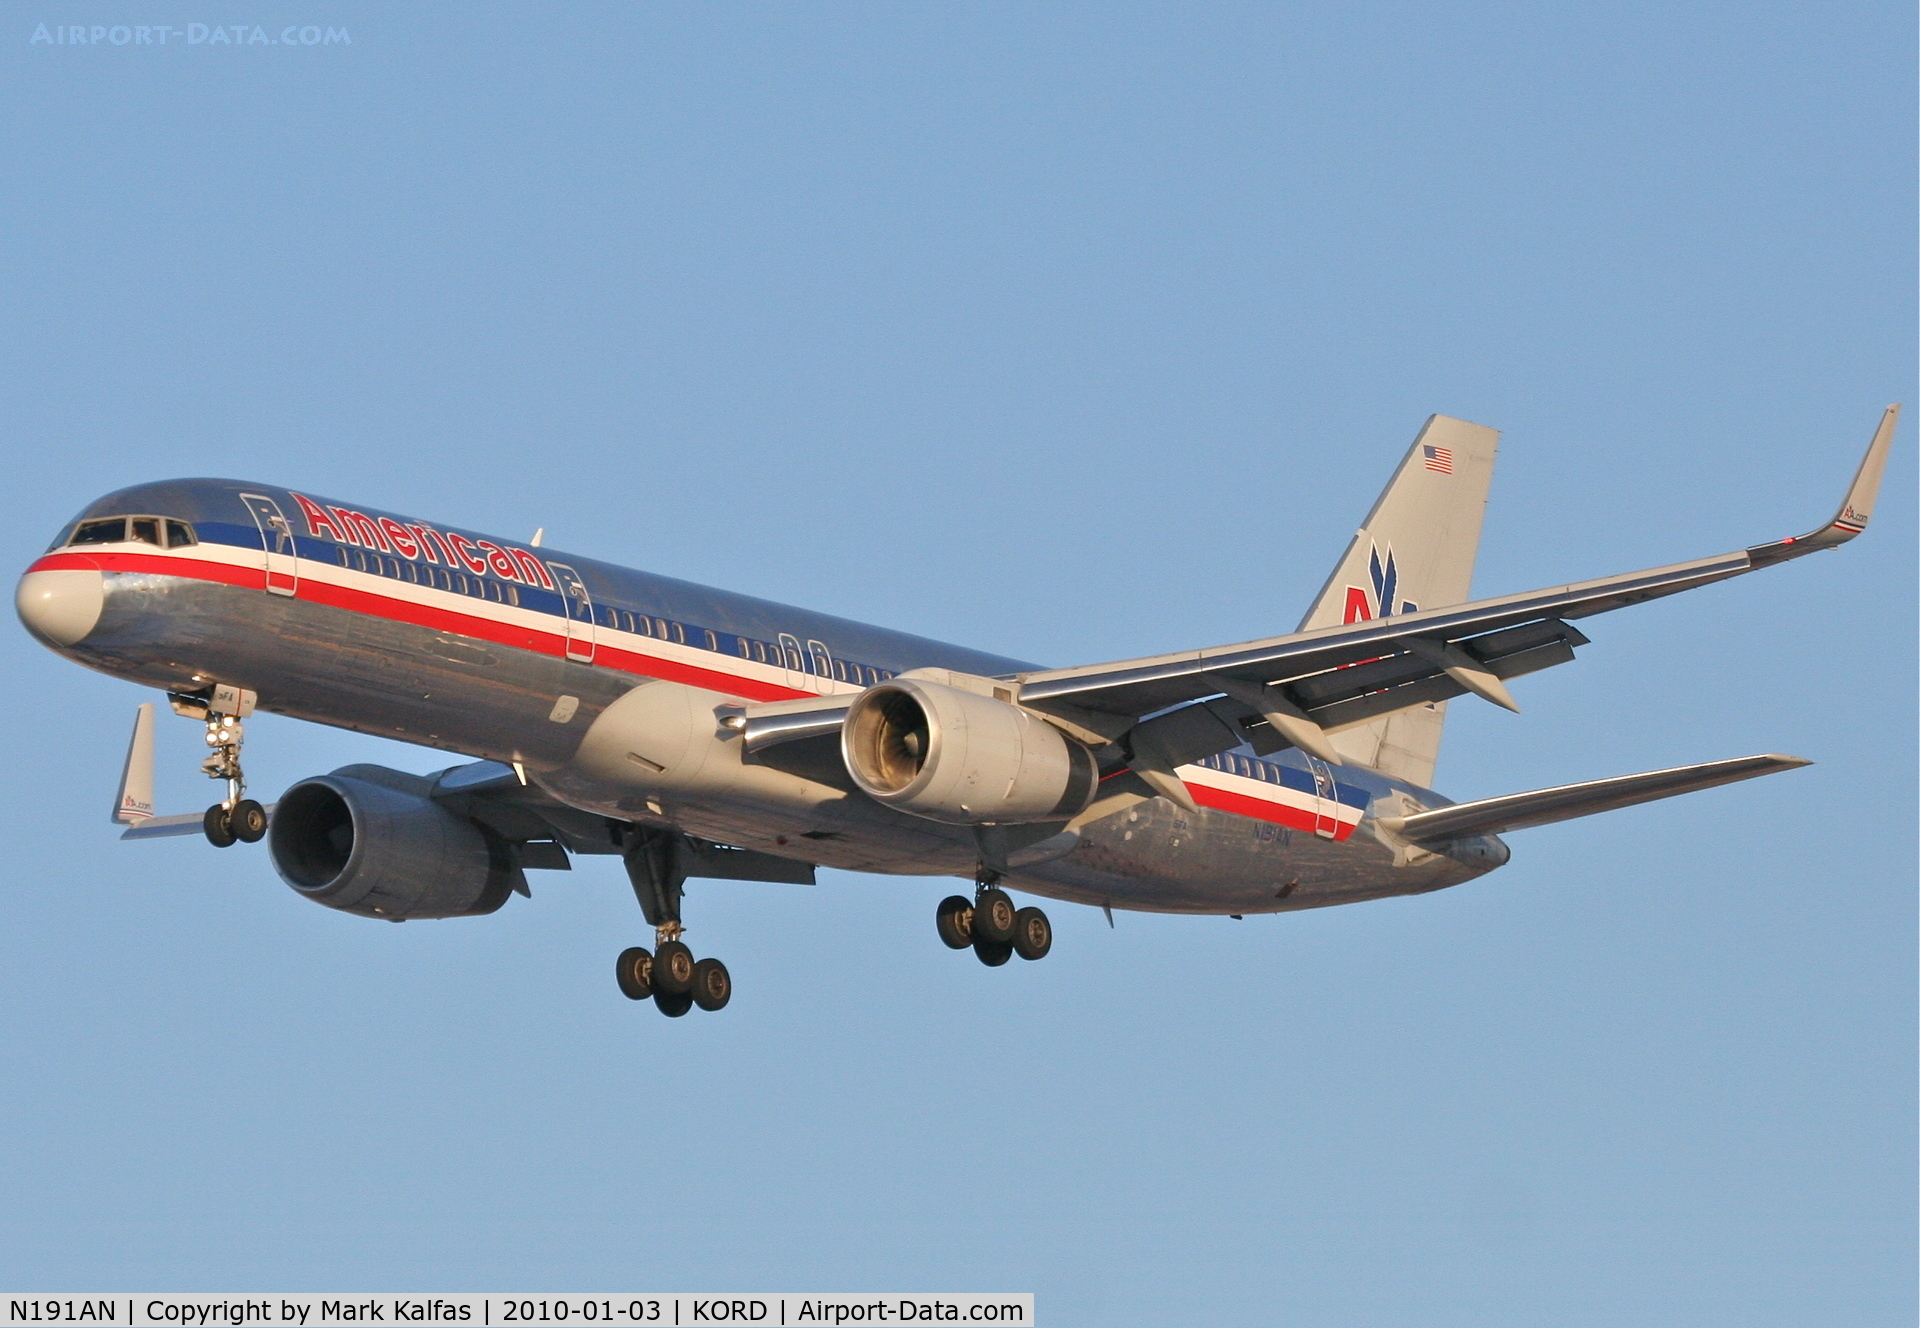 N191AN, 2001 Boeing 757-223 C/N 32385, American Airlines Boeing 757-223, AAL2378, arriving KORD RWY 28 from KEGE.